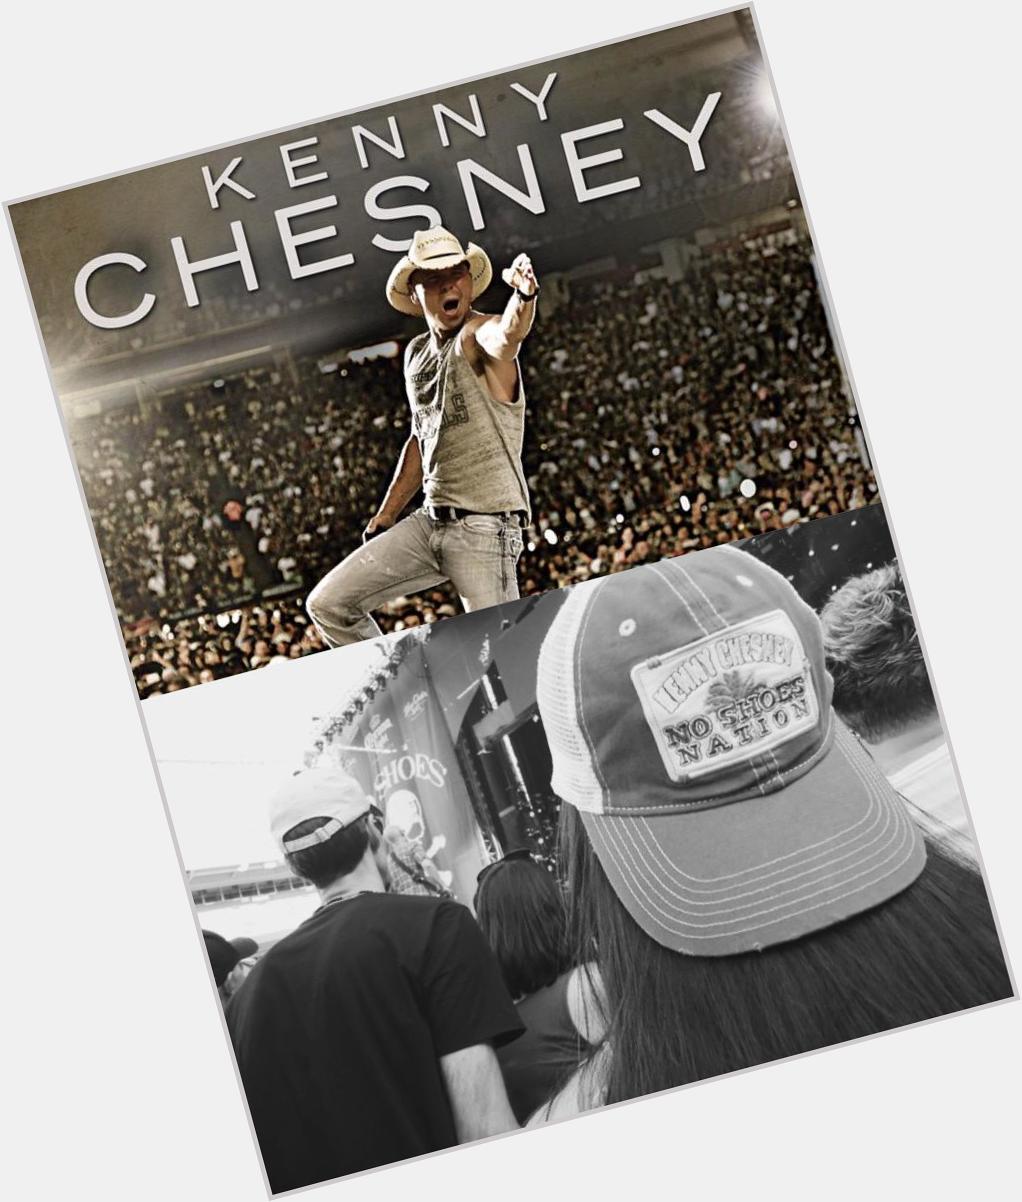 Happy birthday to Kenny Chesney  